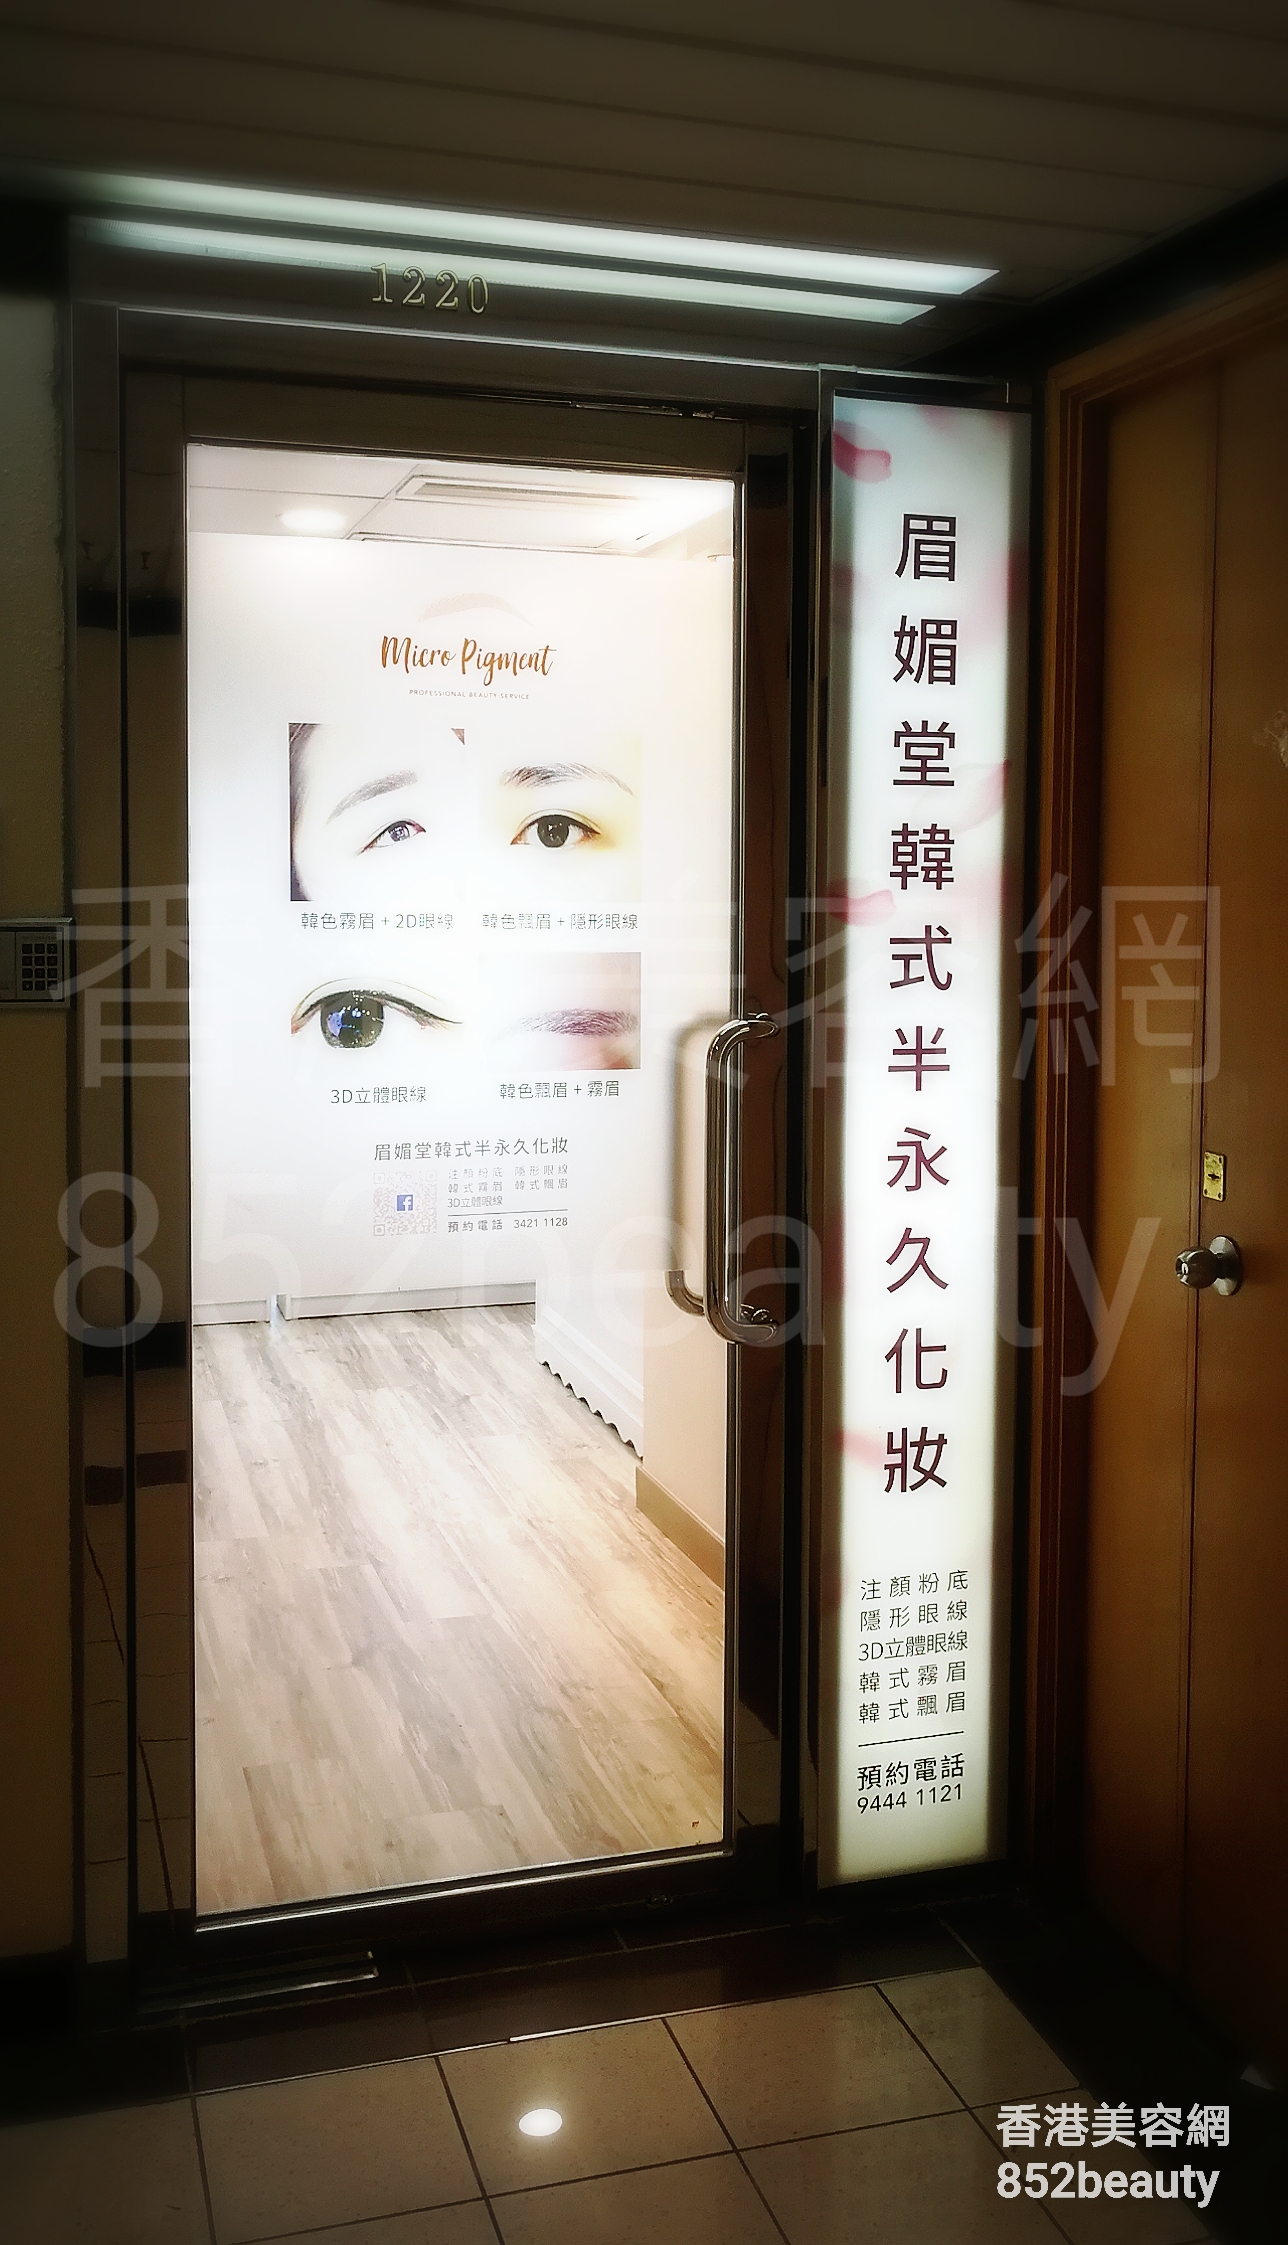 香港美容網 Hong Kong Beauty Salon 用戶: 